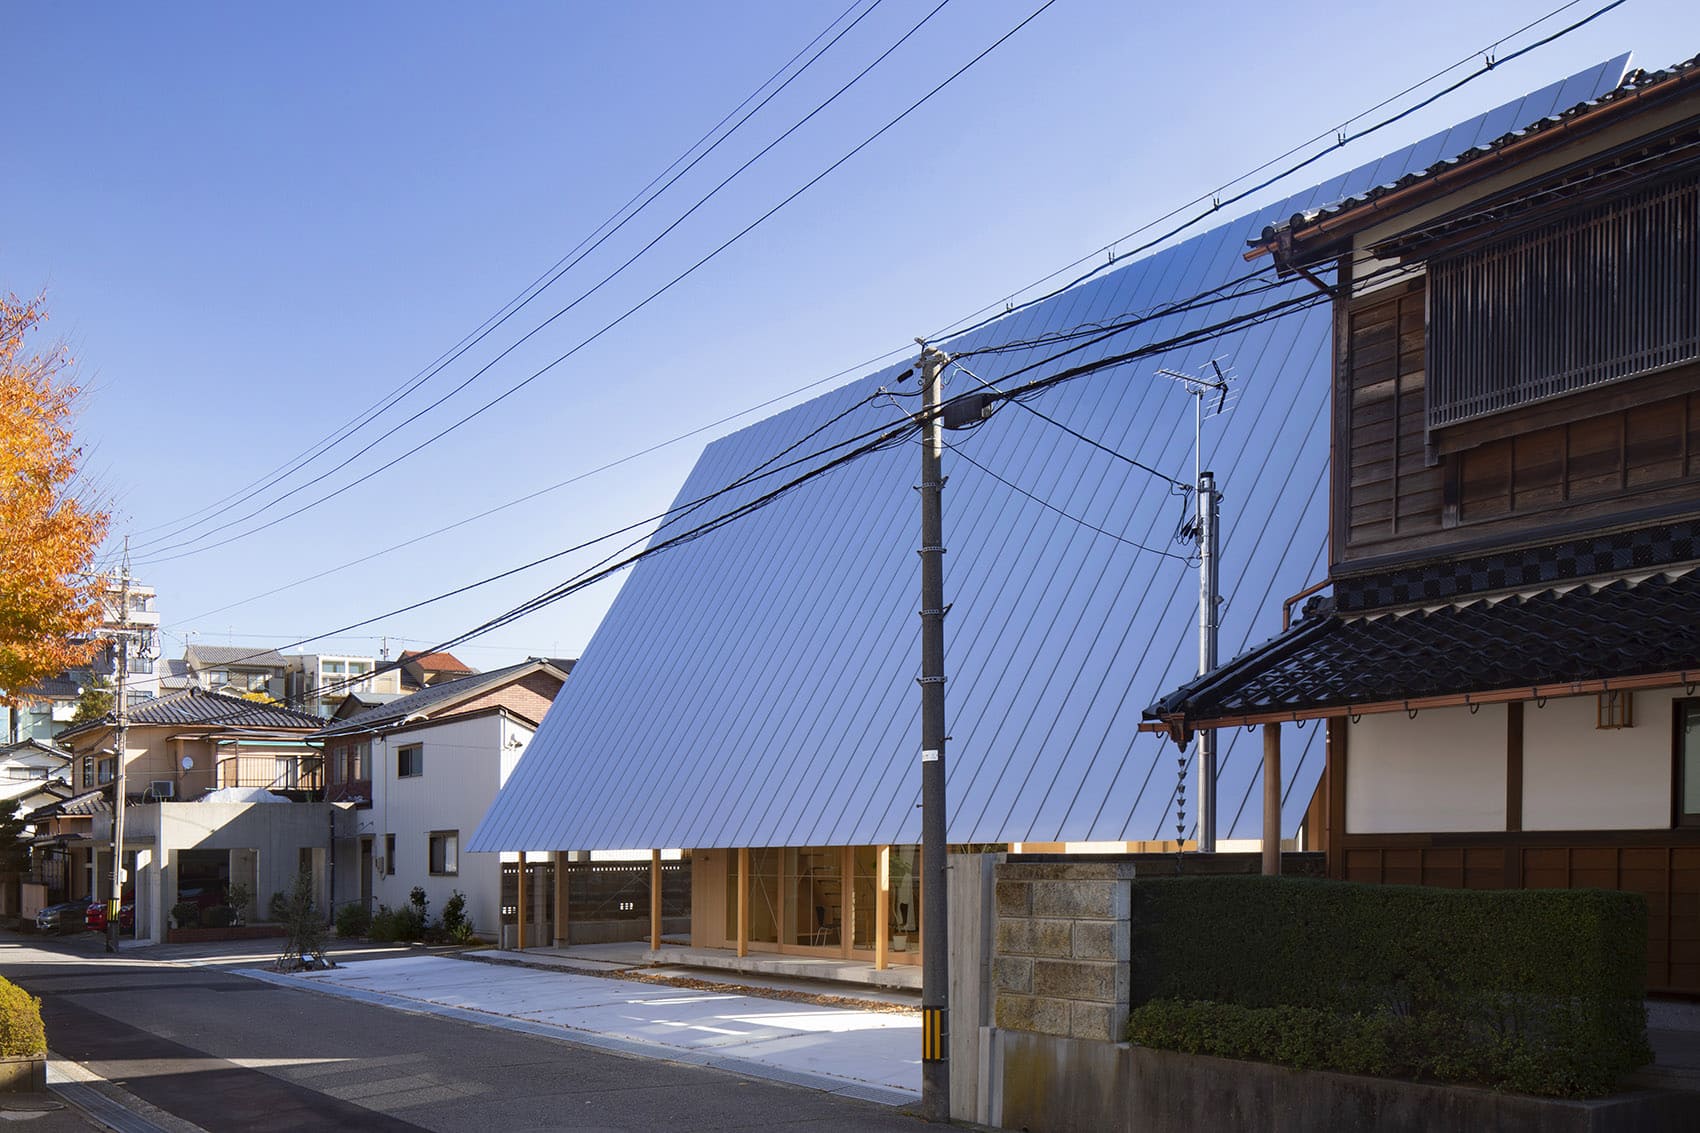 025 house in kanazawa by shota nakanishi architects ohno japan ae759